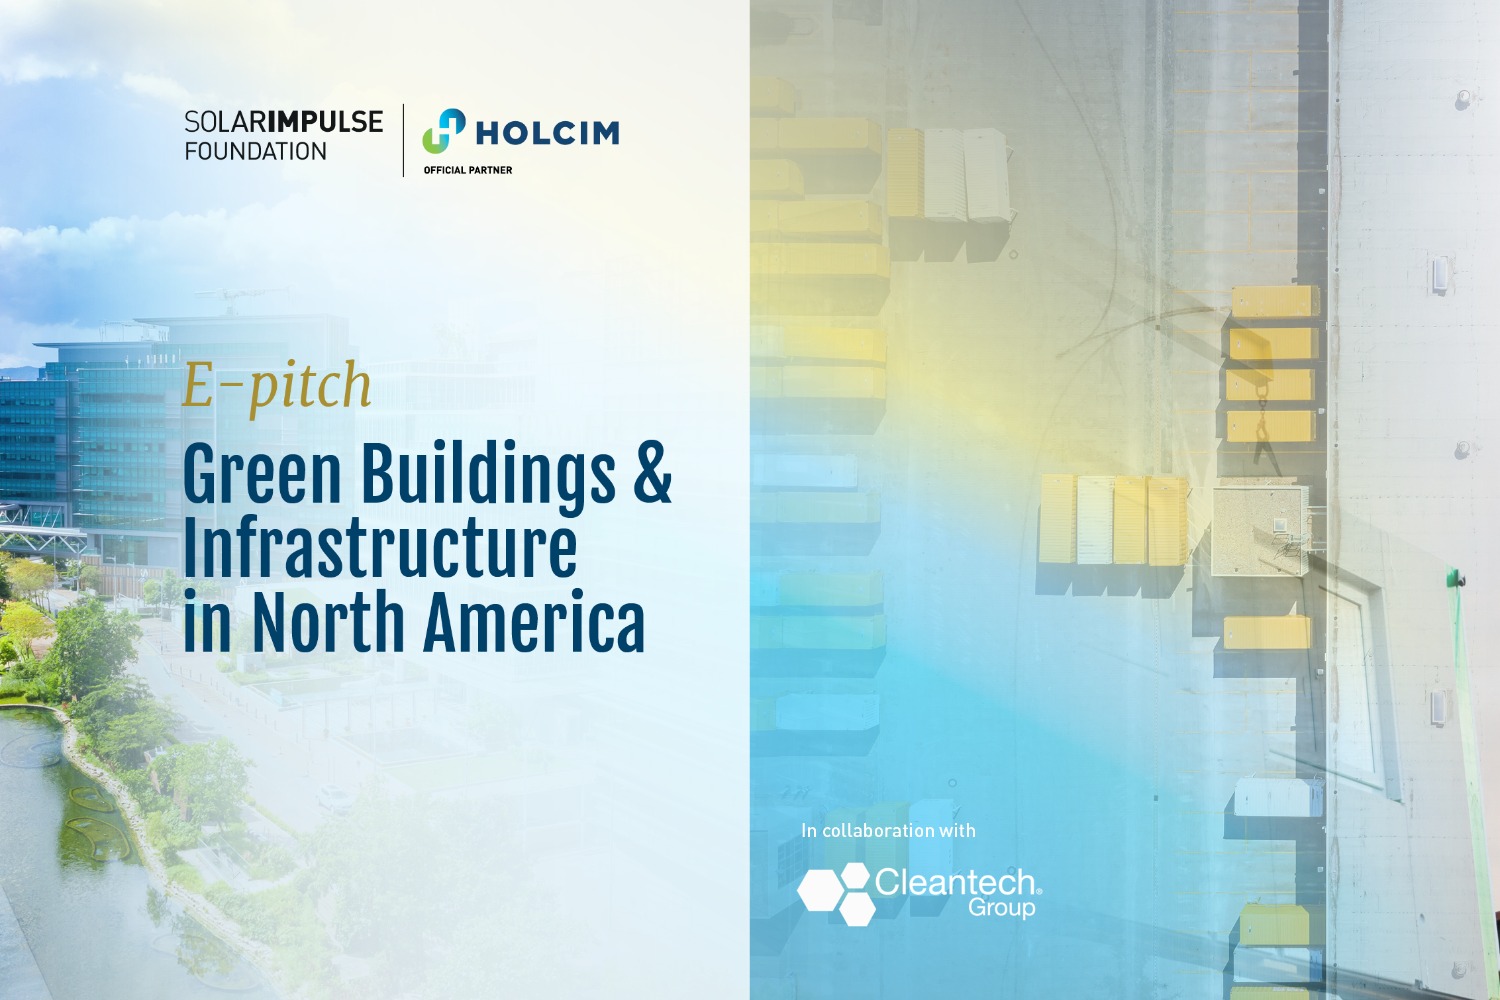 E-Pitch Solar Impulse Investment - "Bâtiments et infrastructures verts en Amérique du Nord" - SIF x Cleantech Group